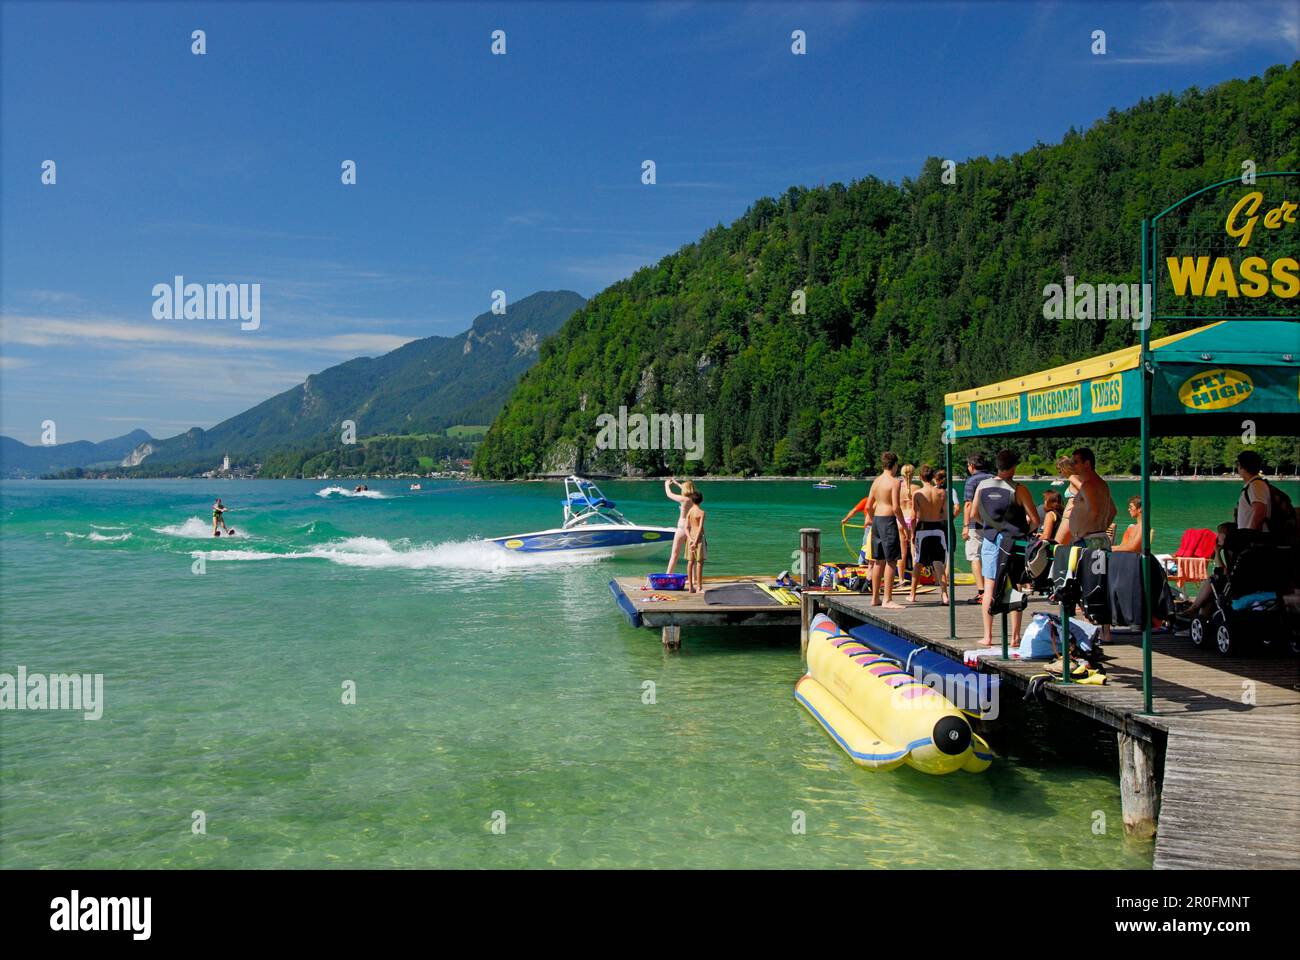 Anlegestelle der Wasserski-Schule am See Abersee (Wolfgangsee), Salzkammergut, Salzburg, Österreich Stockfoto